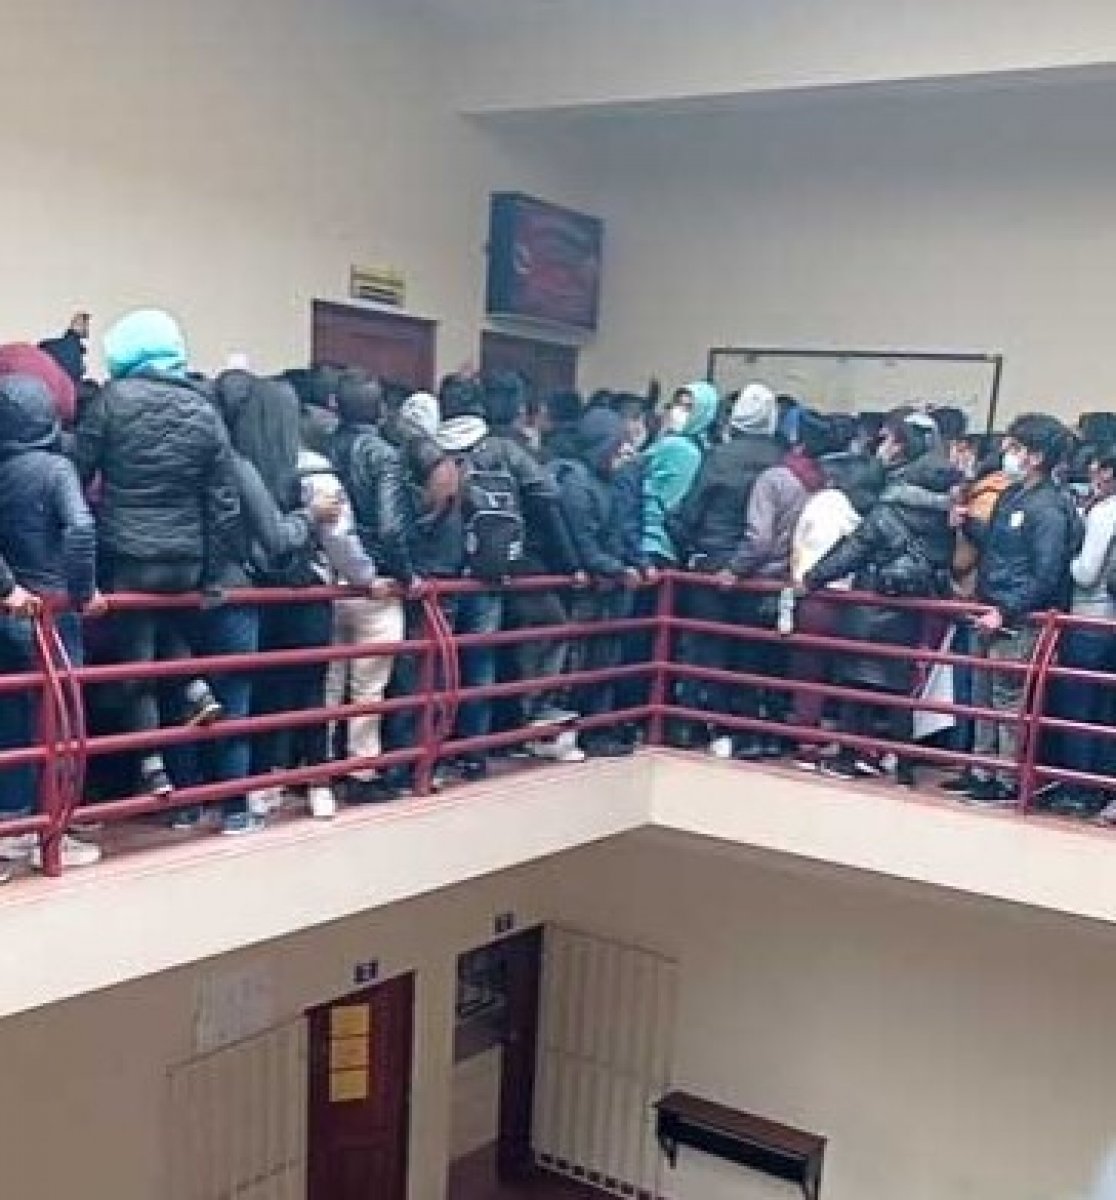 Railings broken in Bolivia college fight: 7 dead #2